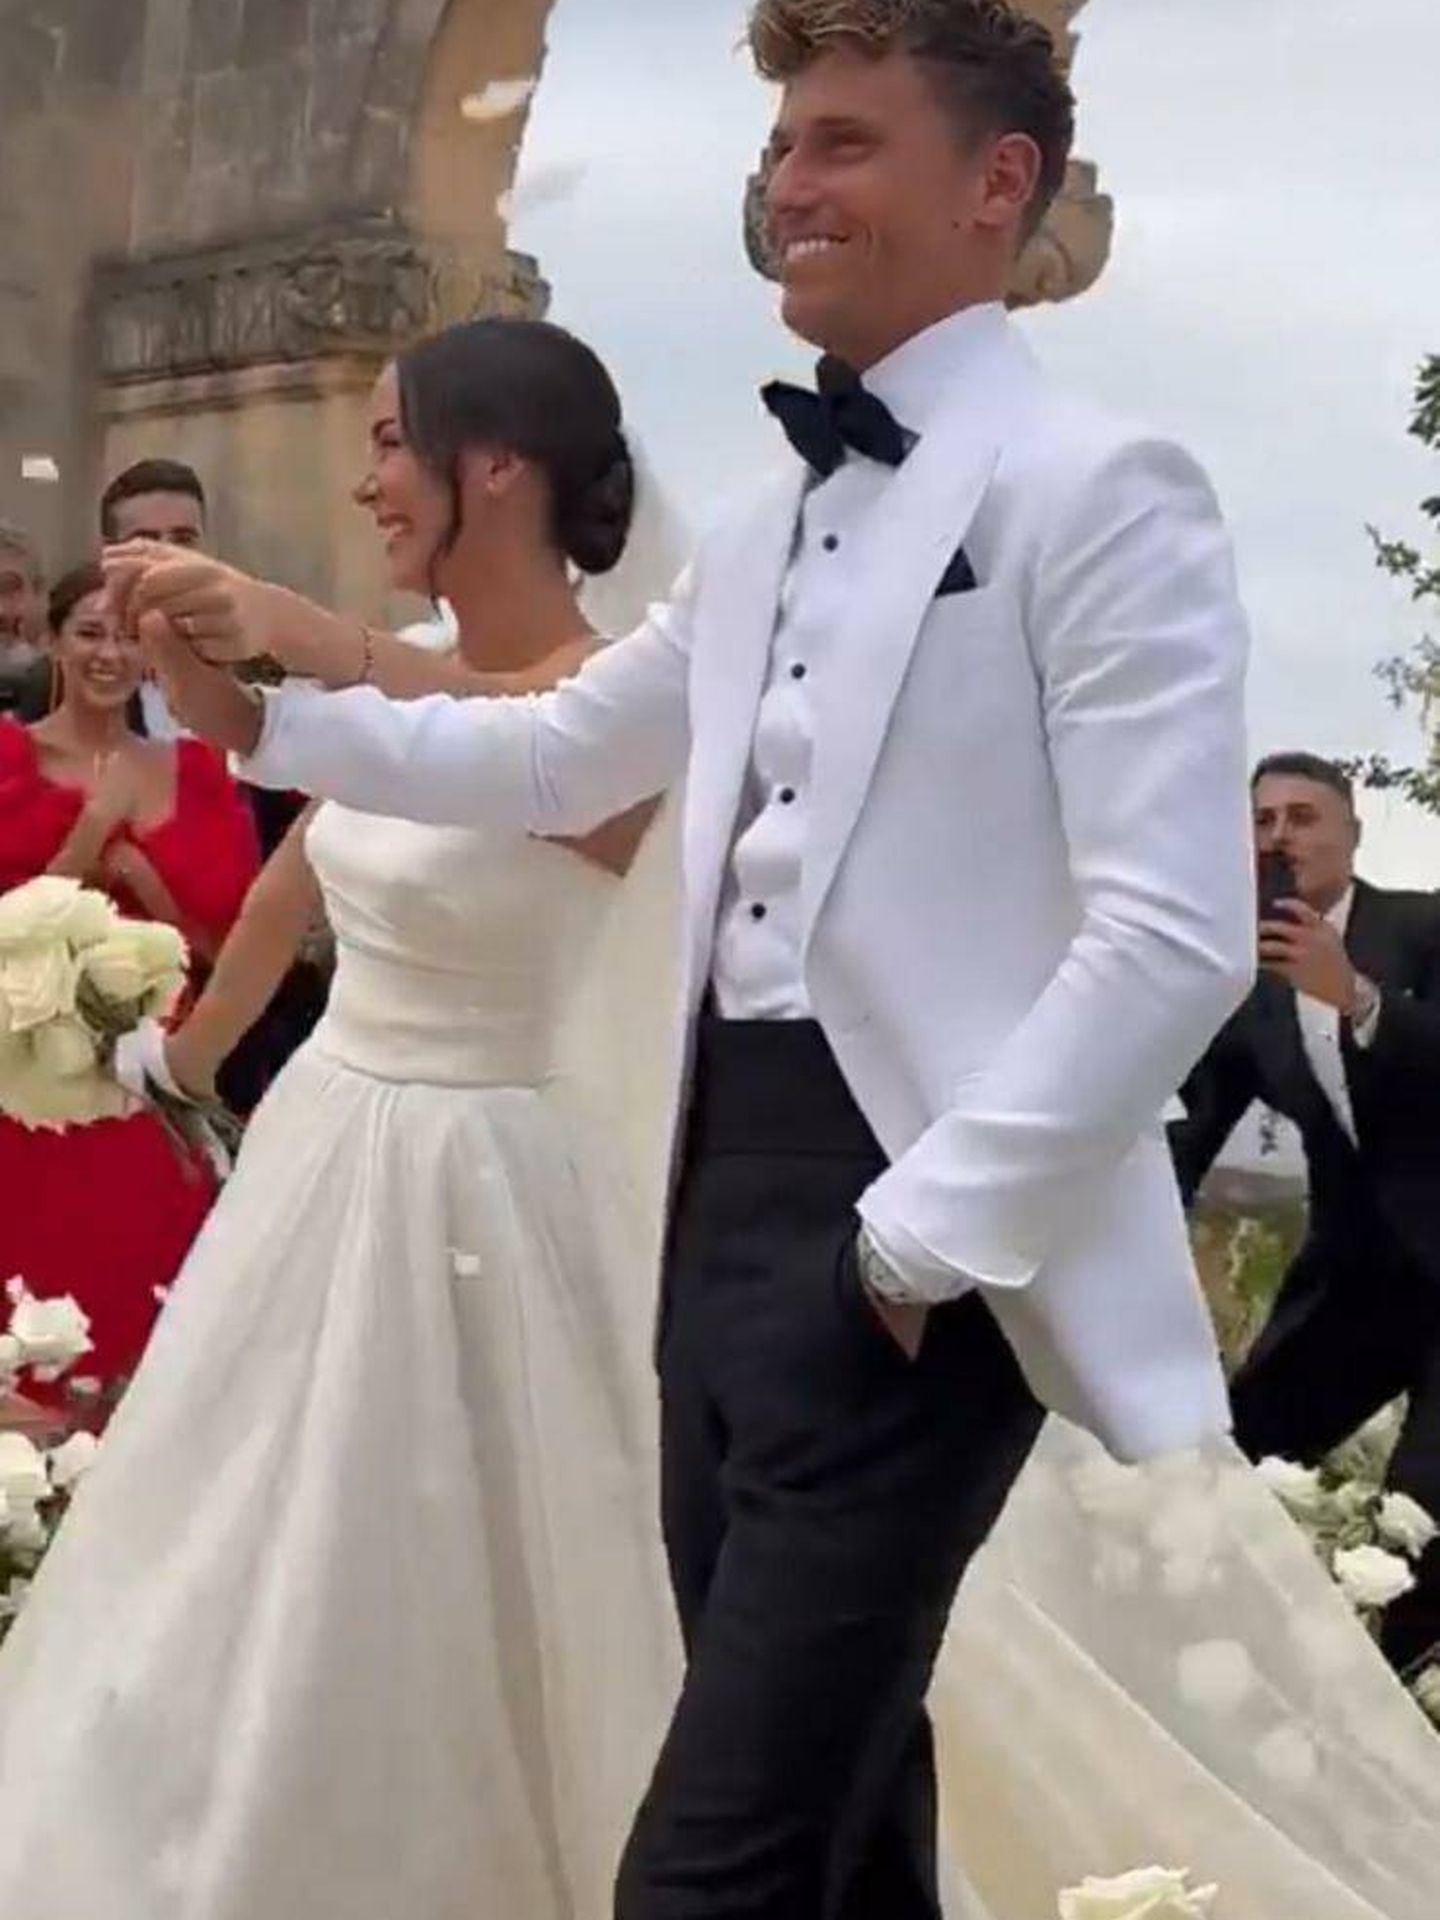 Patricia Noarbe y Marcos Llorente, convertidos en marido y mujer. (Instagram/ @beatrizespejel)